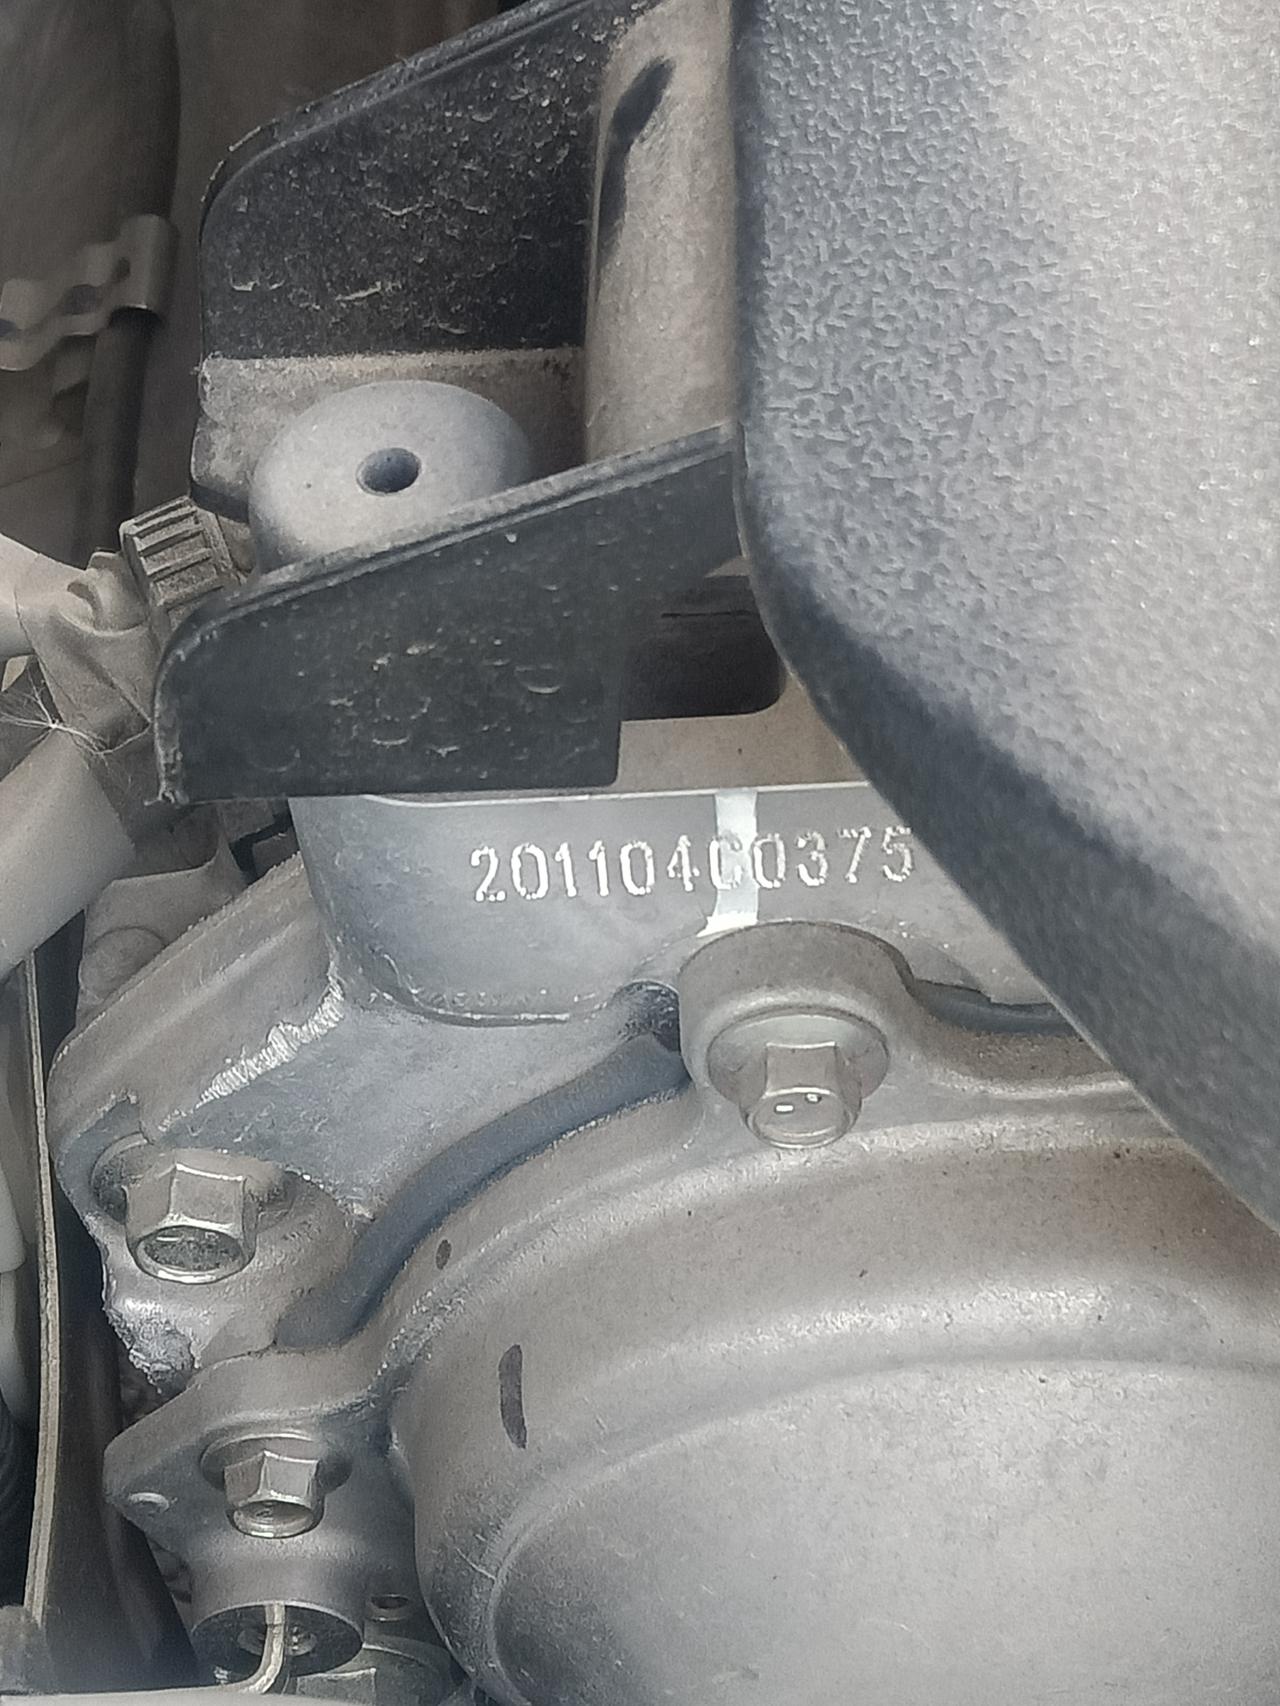 日产奇骏 发动机上的这个编号是什么意思